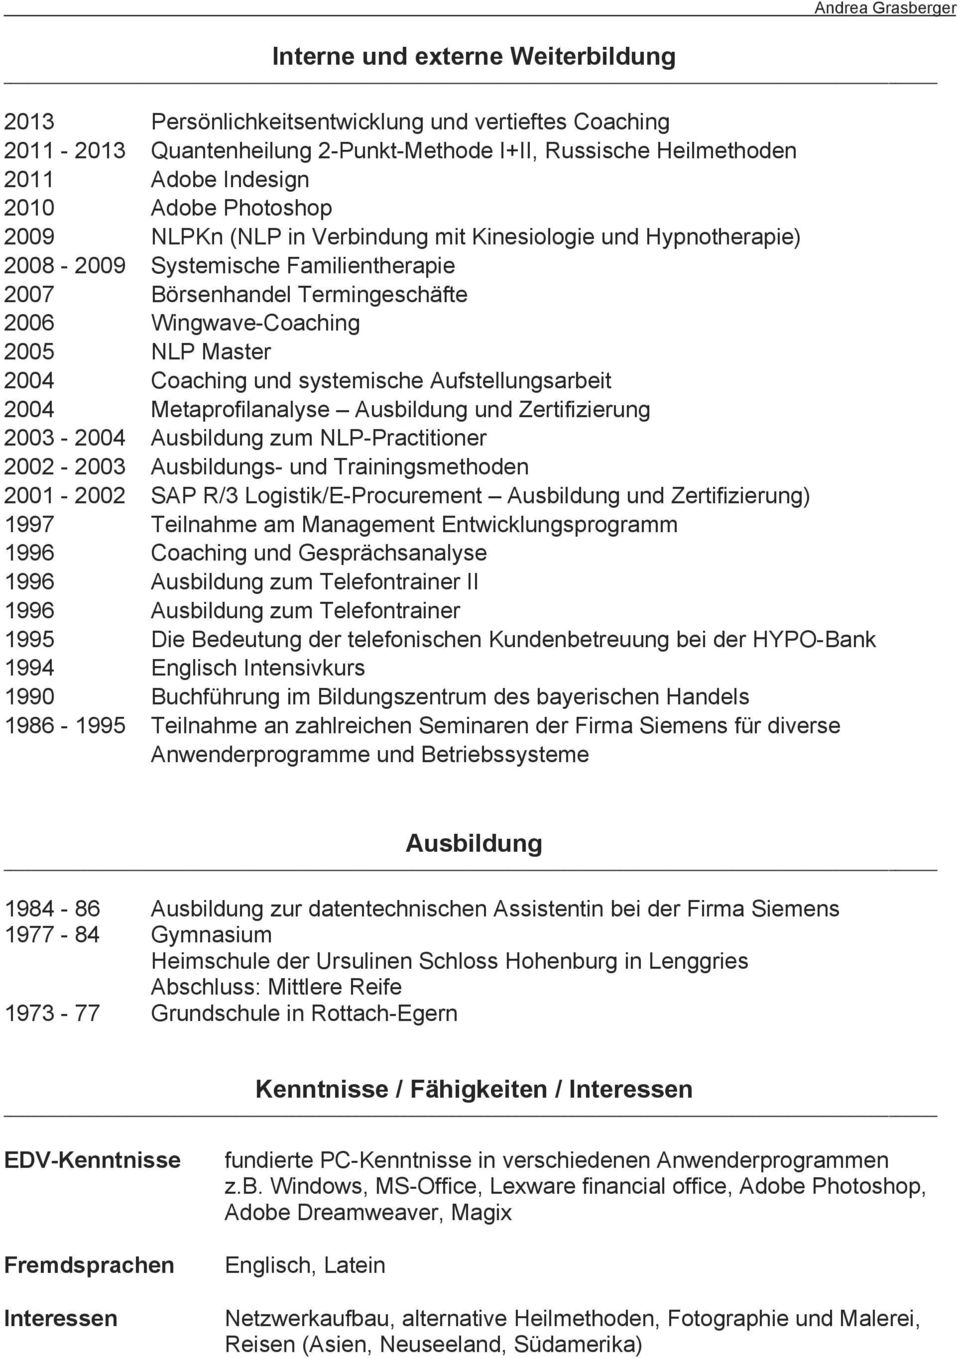 Coaching und systemische Aufstellungsarbeit 2004 Metaprofilanalyse Ausbildung und Zertifizierung 2003-2004 Ausbildung zum NLP-Practitioner 2002-2003 Ausbildungs- und Trainingsmethoden 2001-2002 SAP